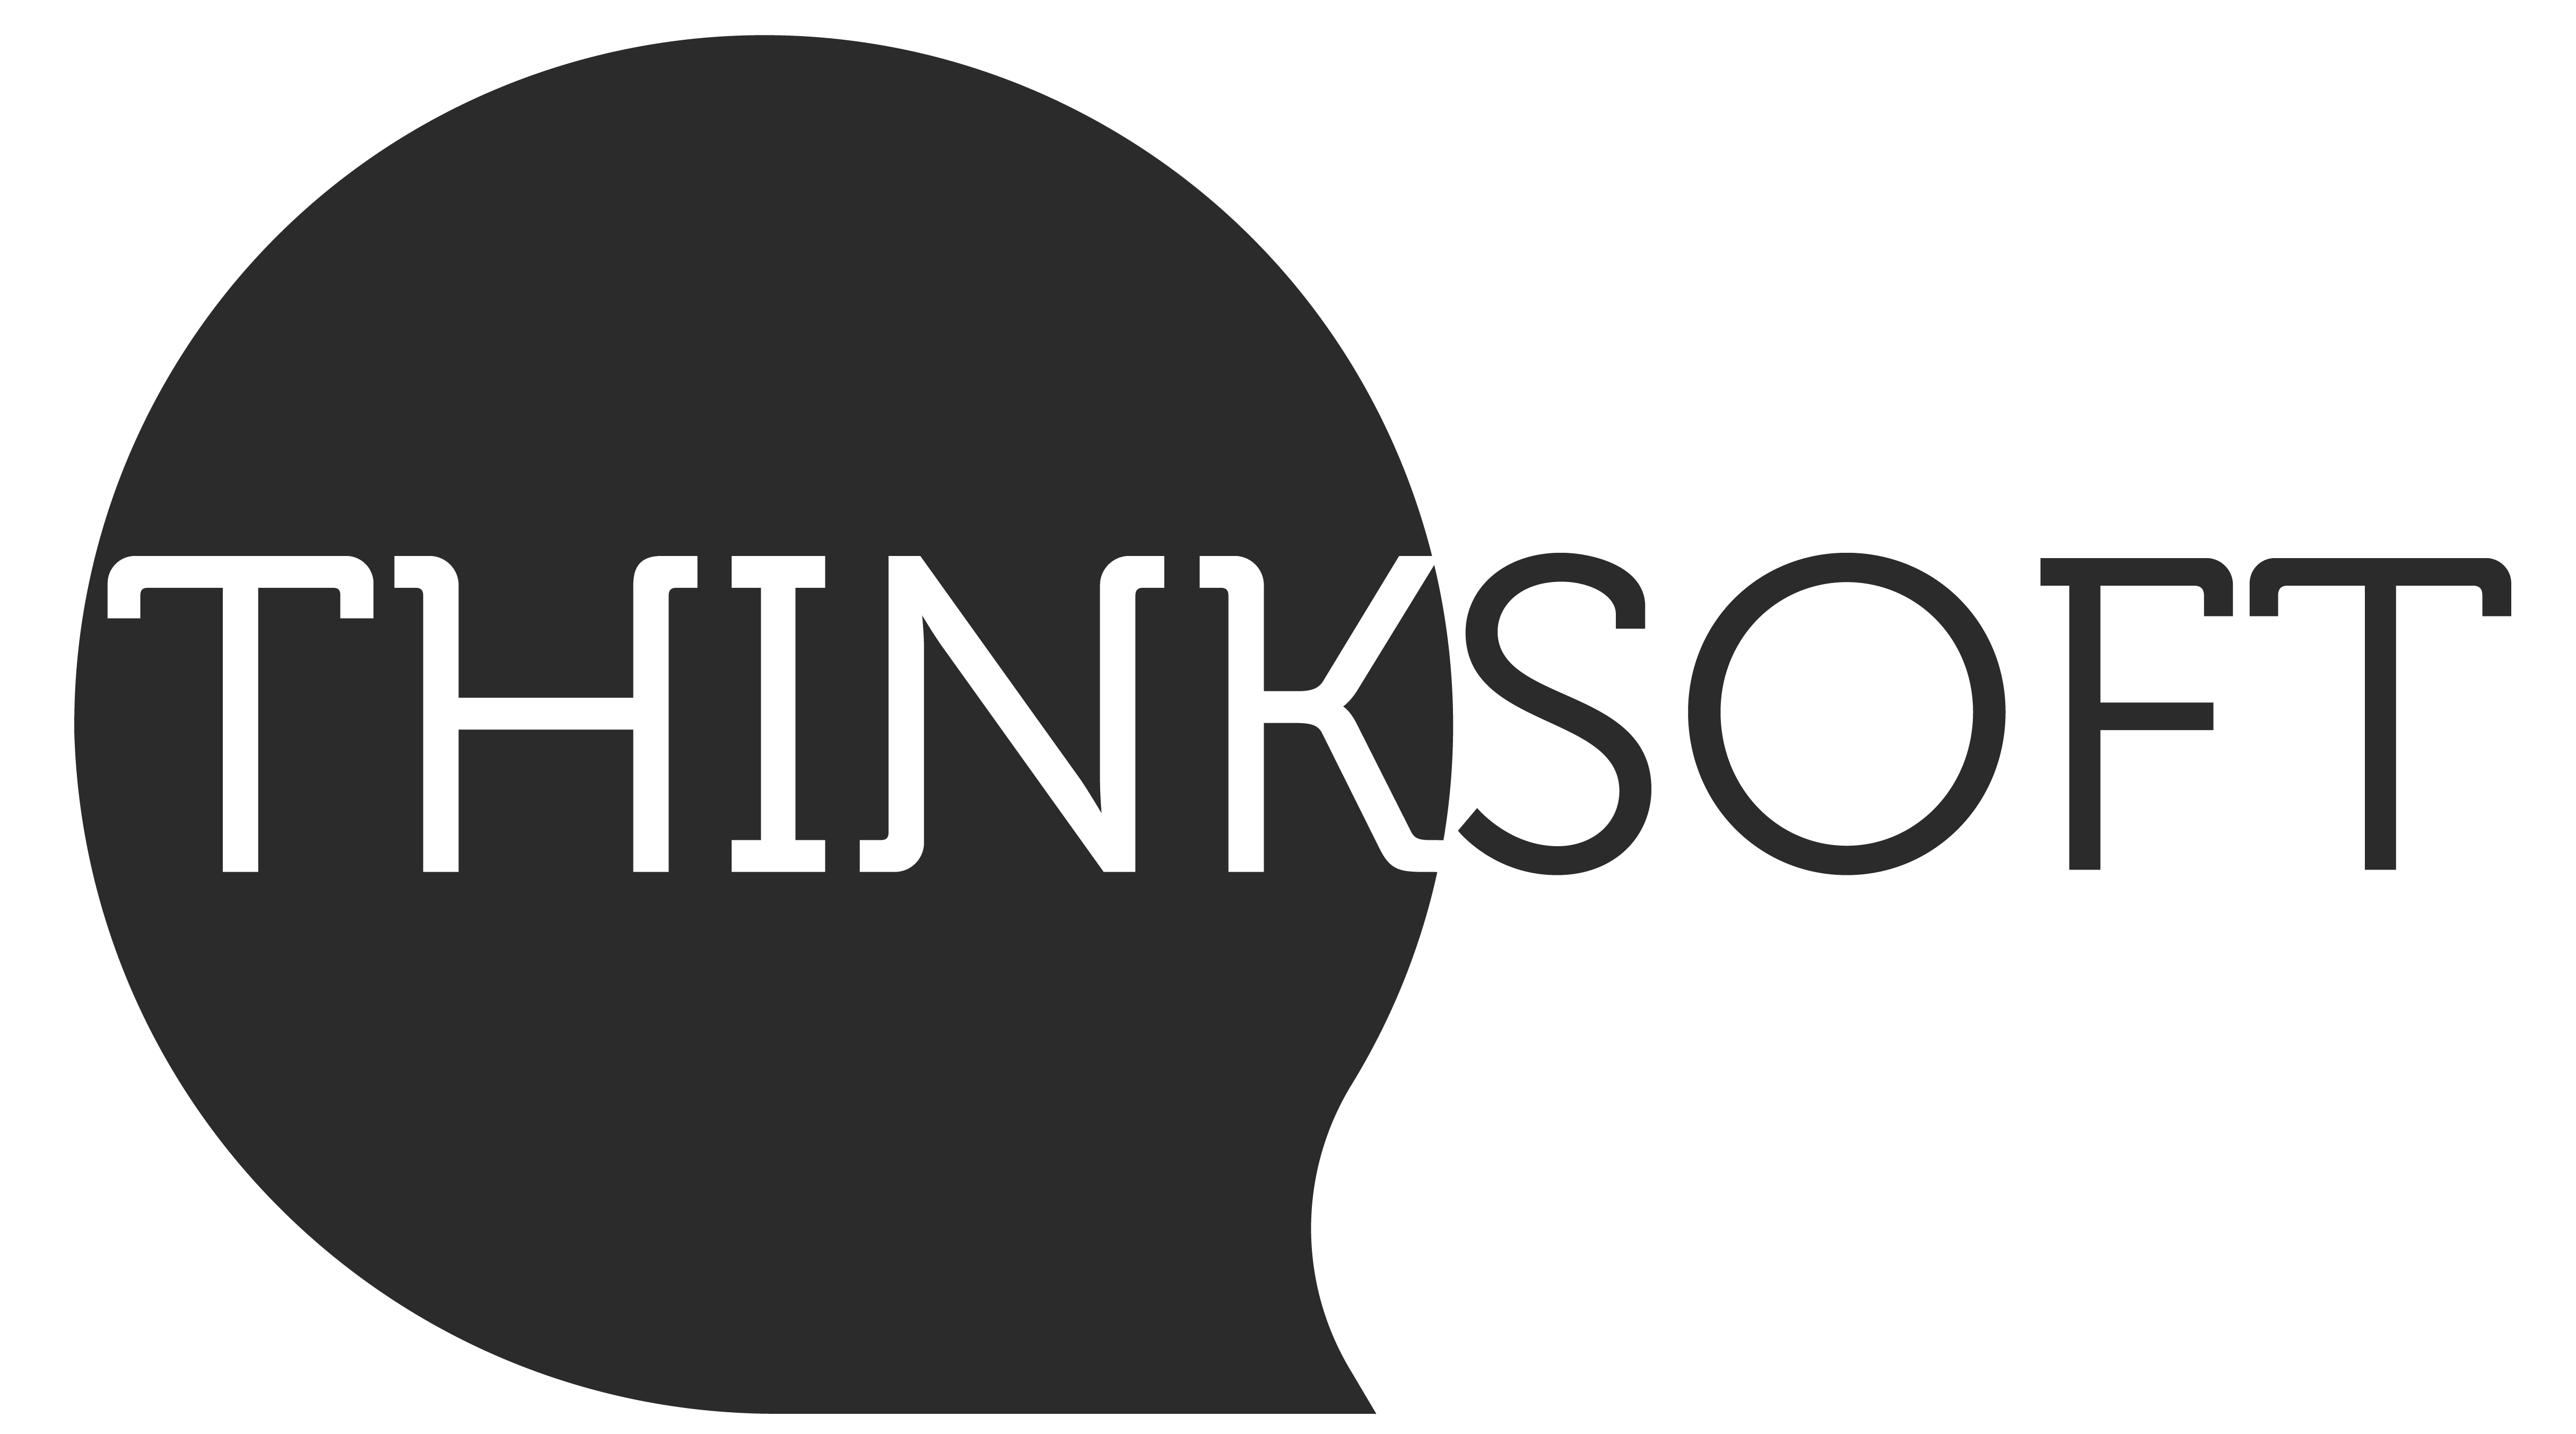 Thinksoft